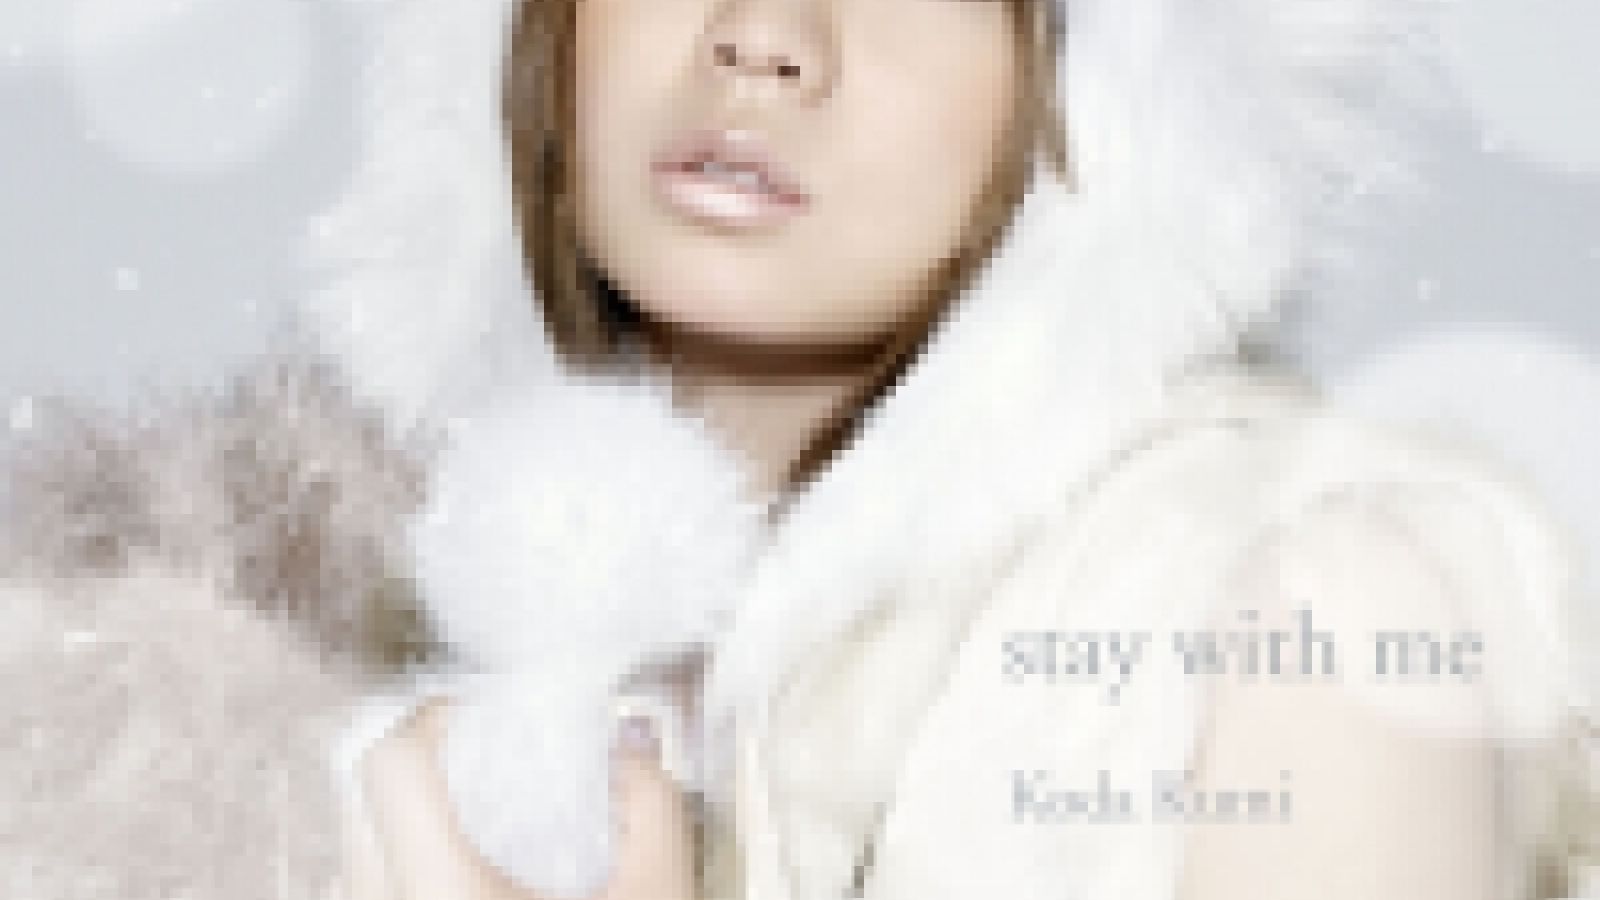 Koda Kumi - stay with me © MORRIE